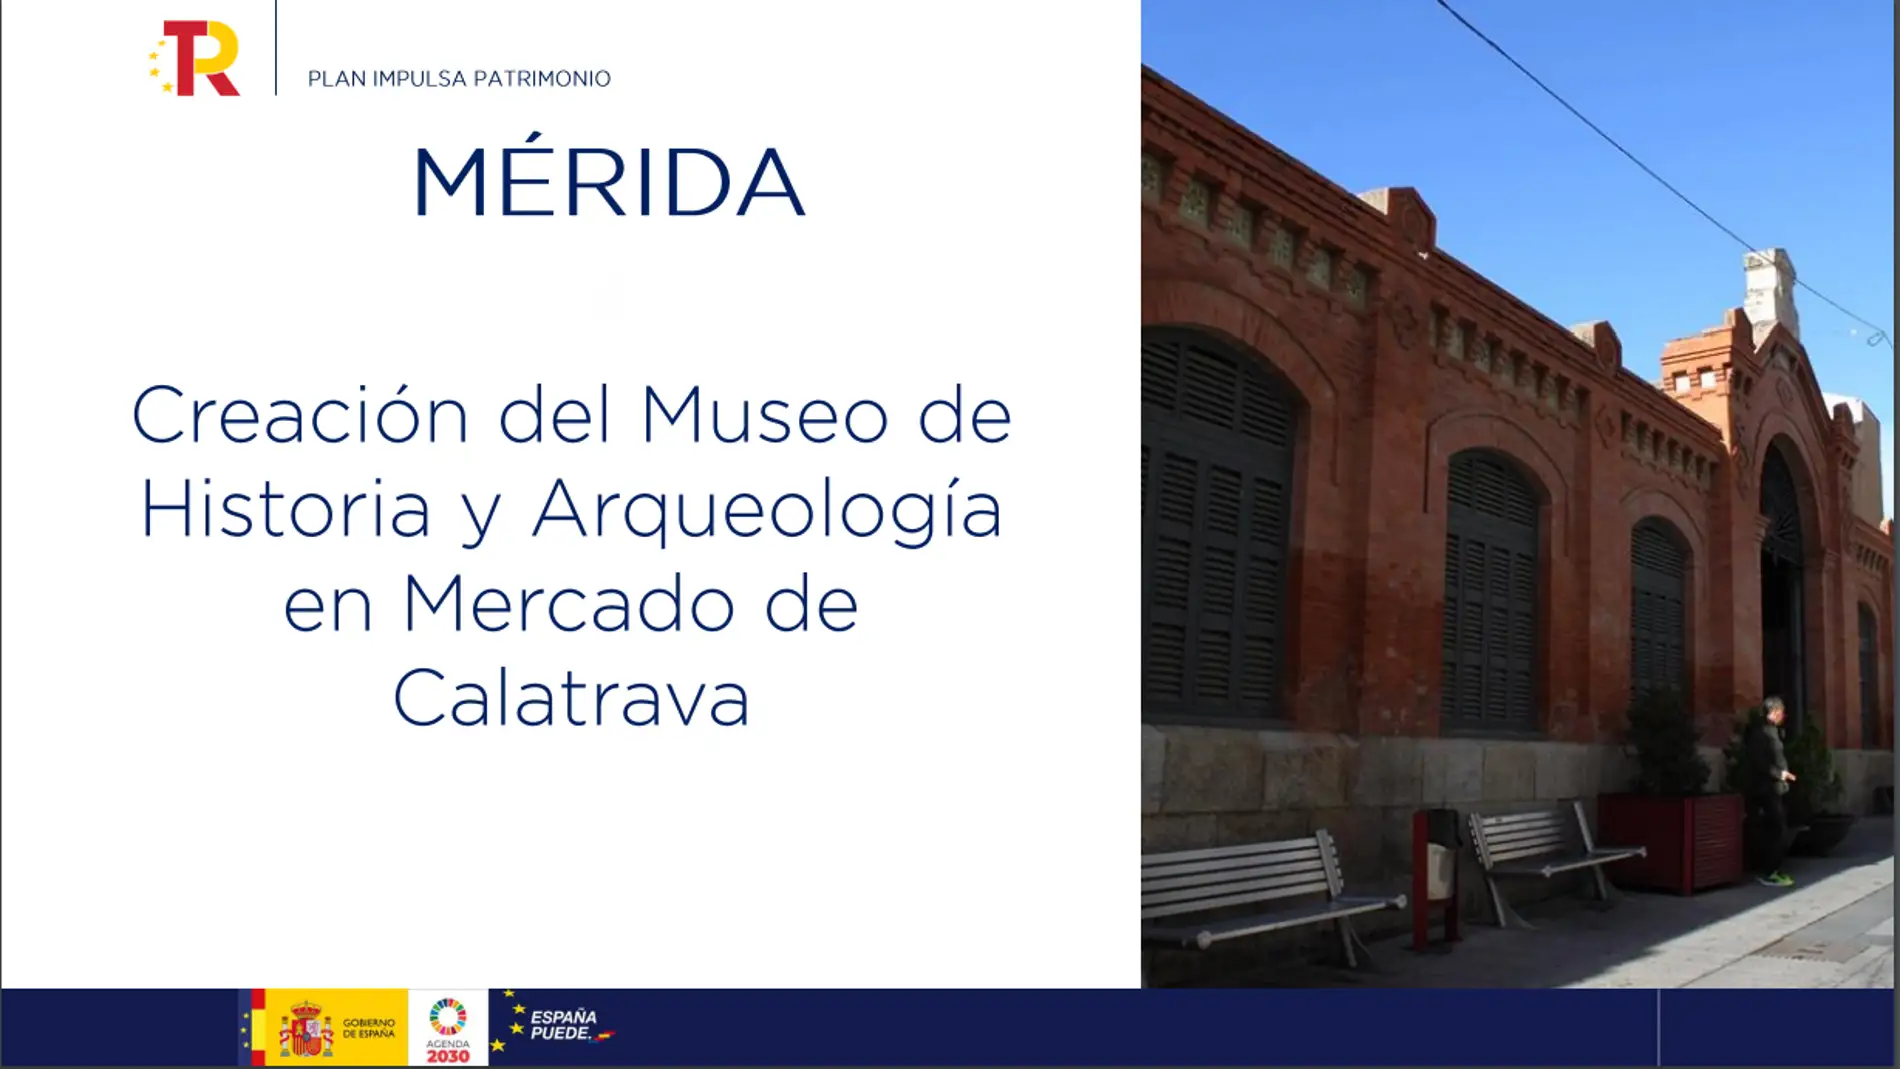 El Museo de Historia y Arqueología se instalará en el Mercado de Calatrava